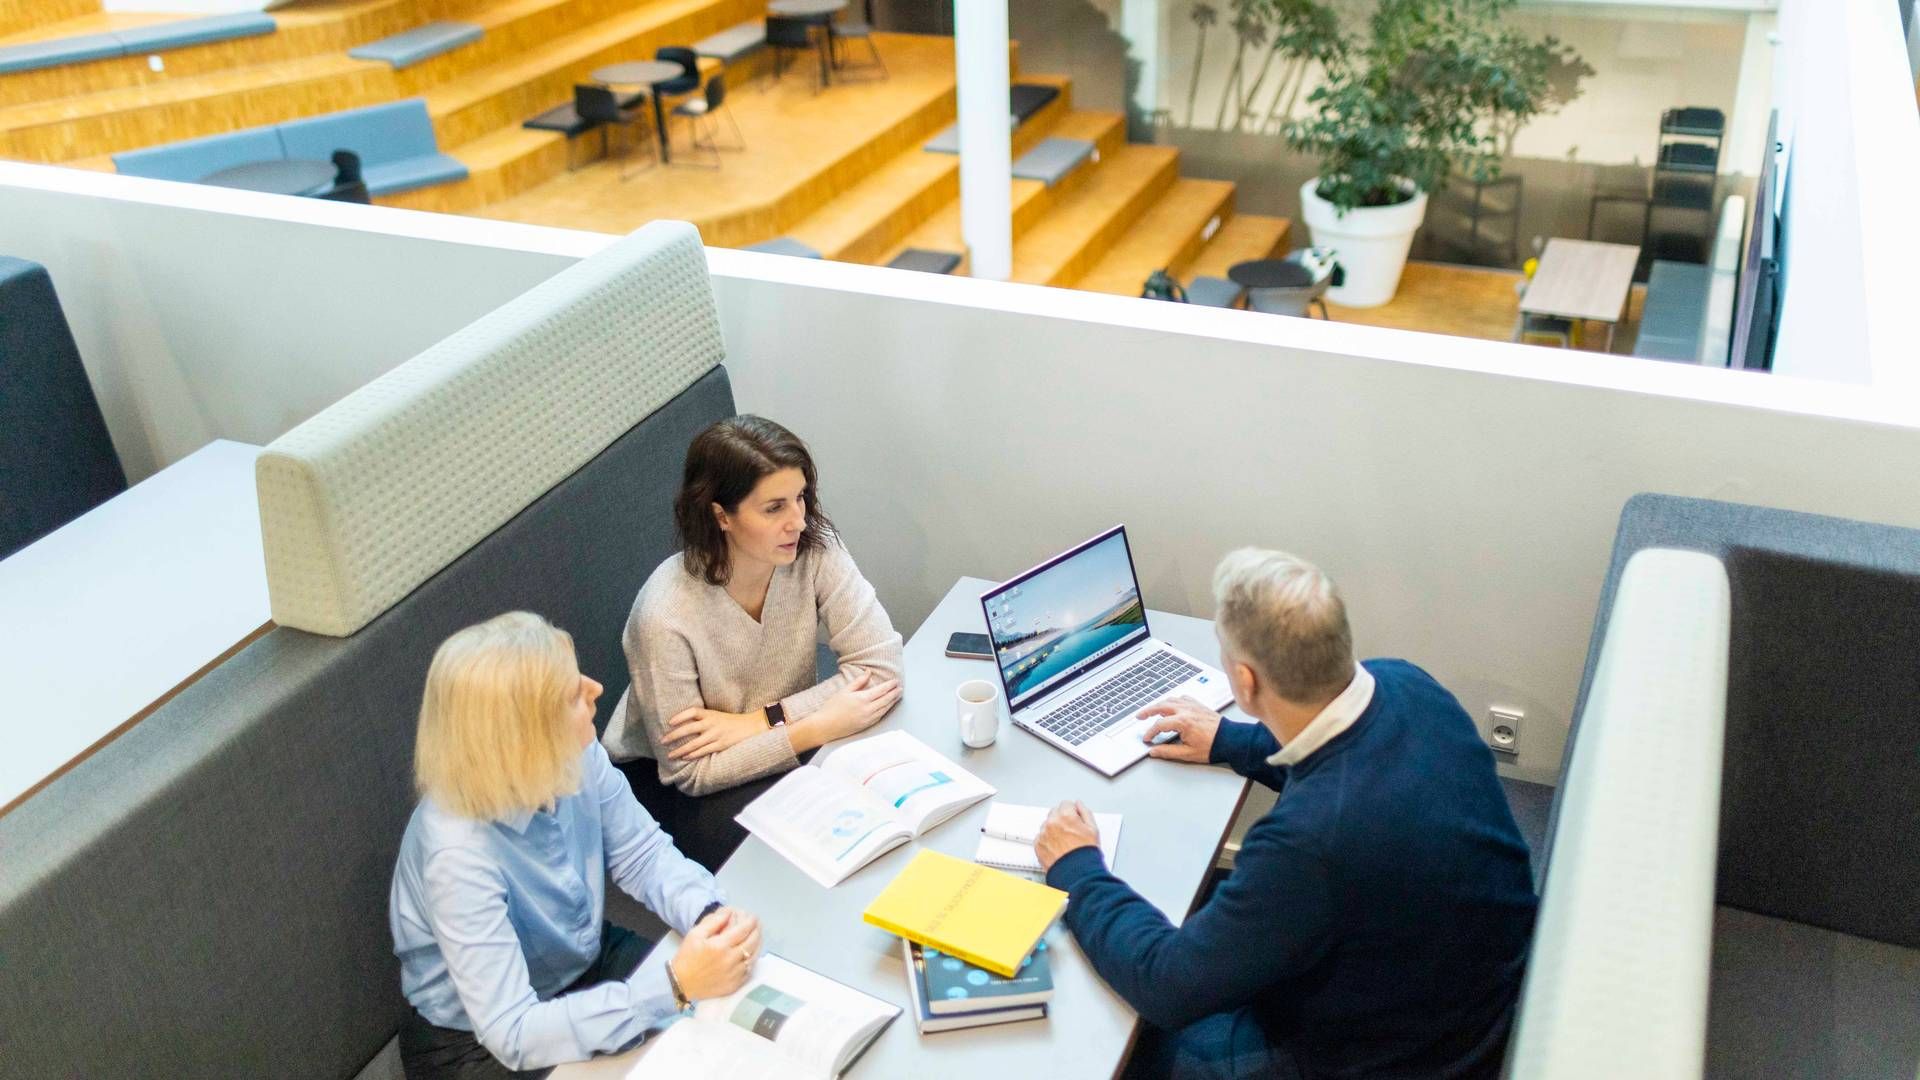 Erhvervsakademi Aarhus vil ruste ansatte og ledere i detailbranchen ned ny efterruddannelse. | Foto: PR/Erhvervskademi Aarhus